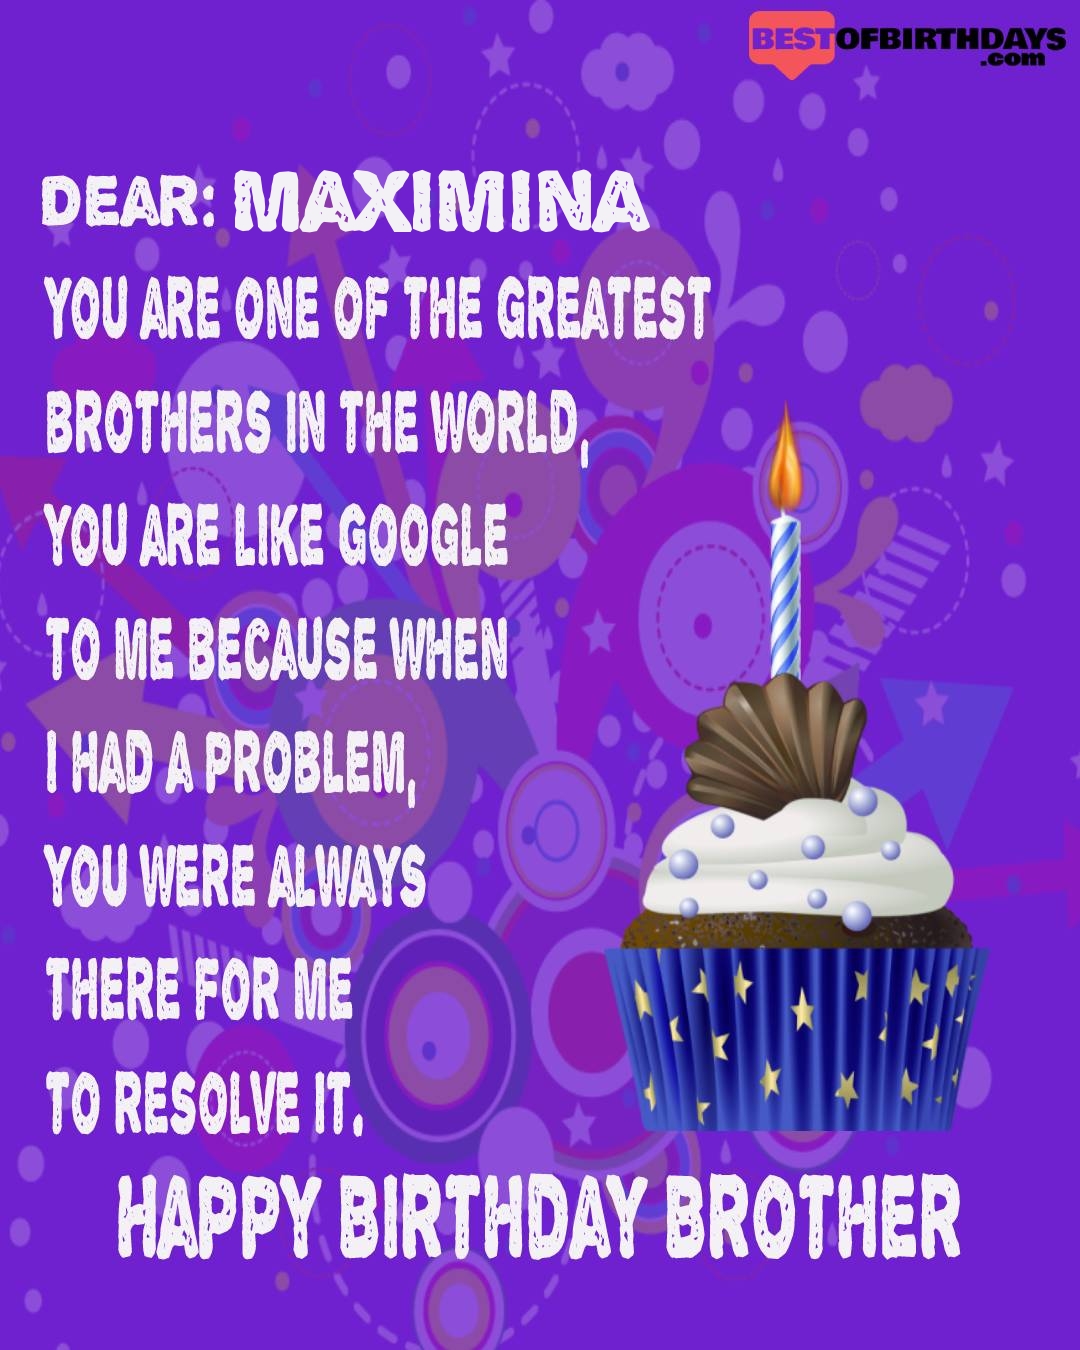 Happy birthday maximina bhai brother bro